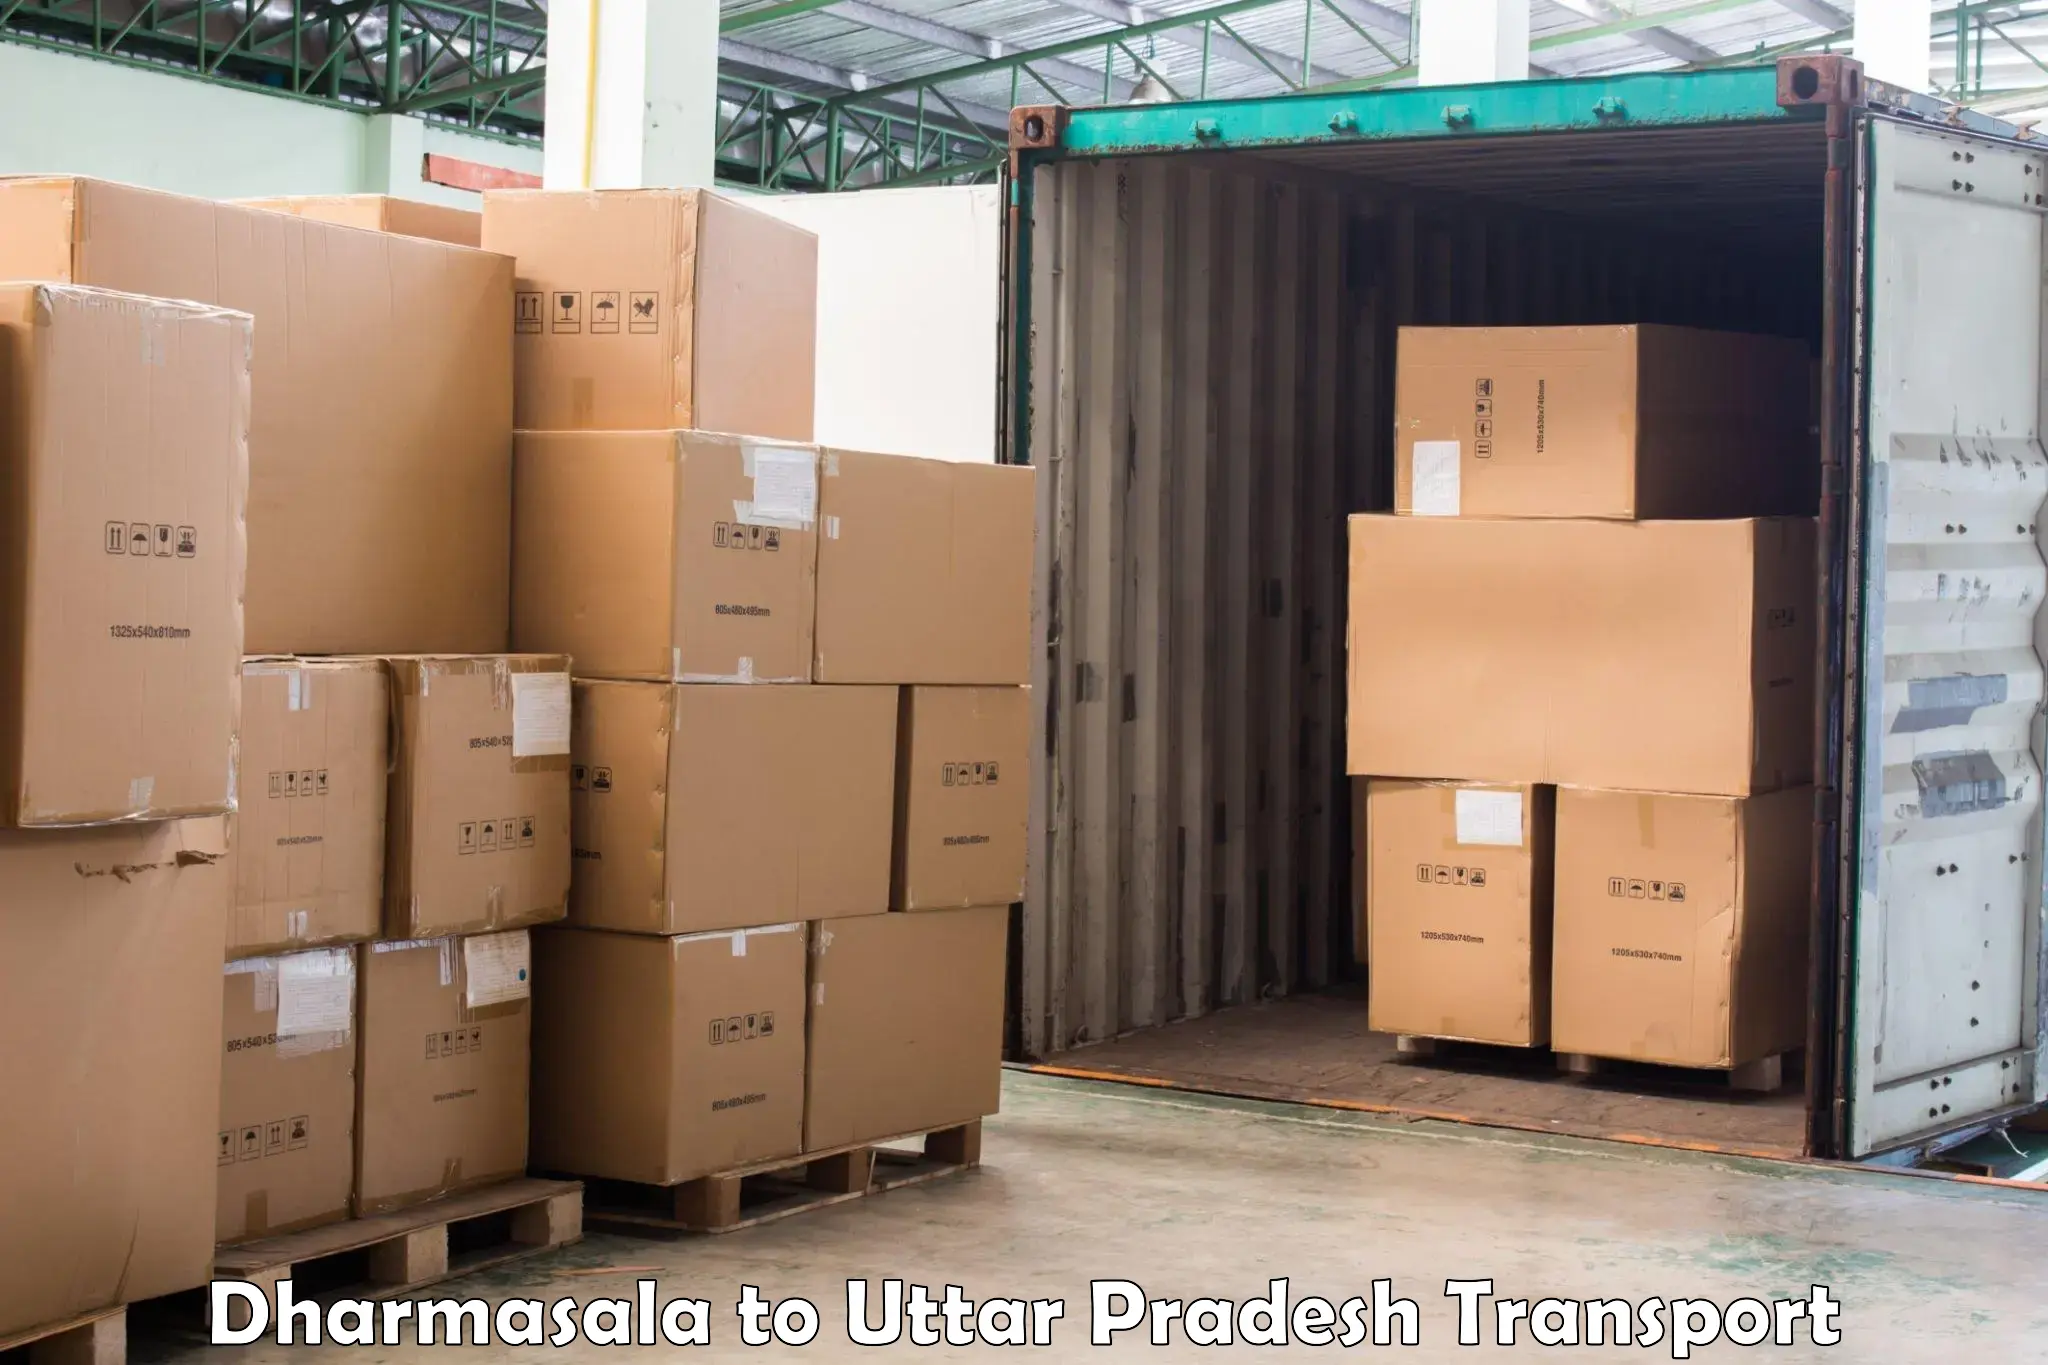 Pick up transport service Dharmasala to Sahatwar